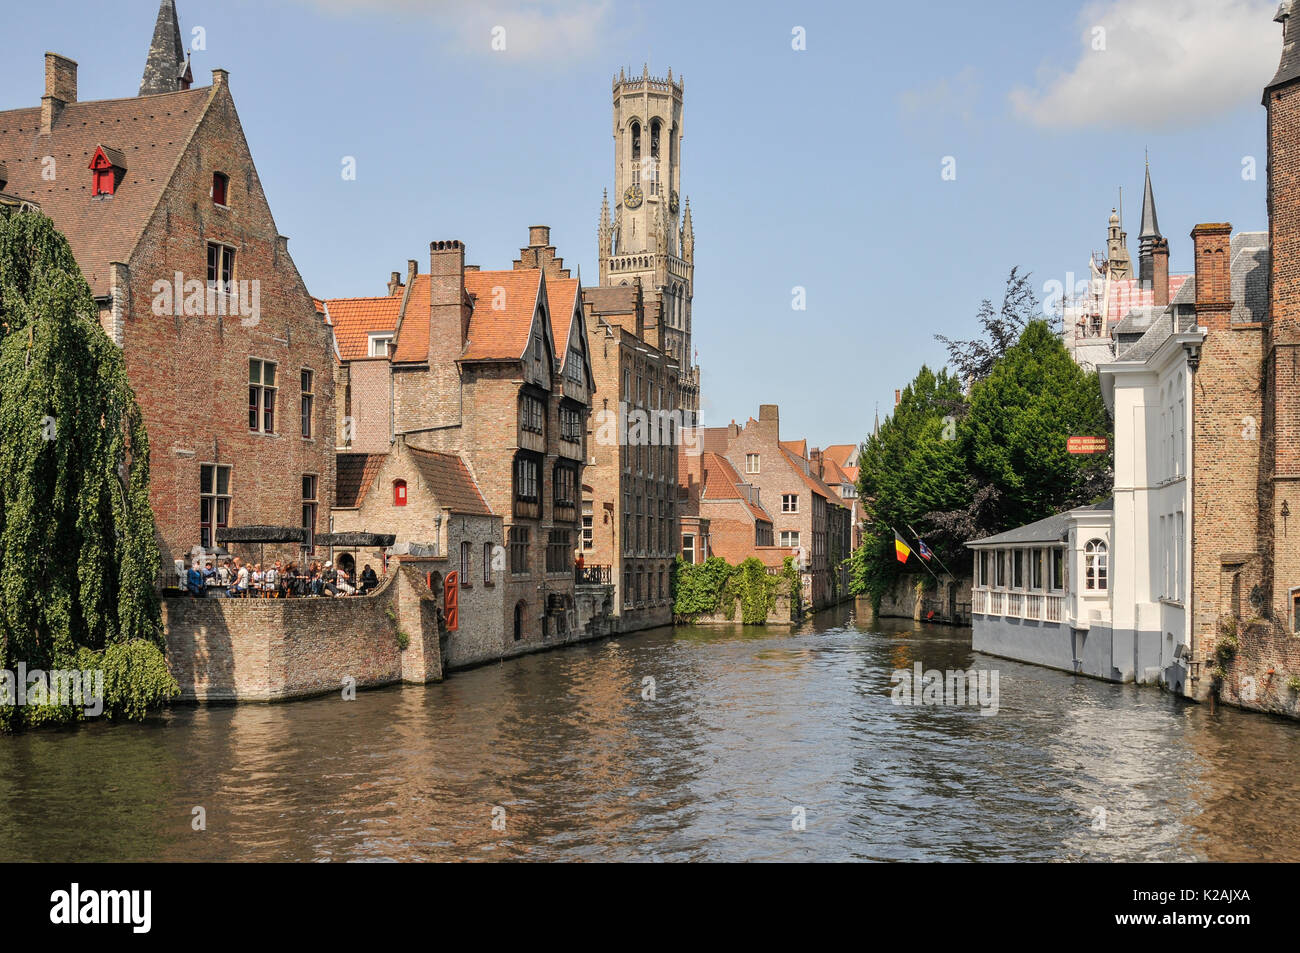 Lo skyline della città medievale di Bruges / bruges nelle Fiandre occidentali, in Belgio con l'acqua di un canale e l'imponente torre campanaria in piazza del mercato Foto Stock